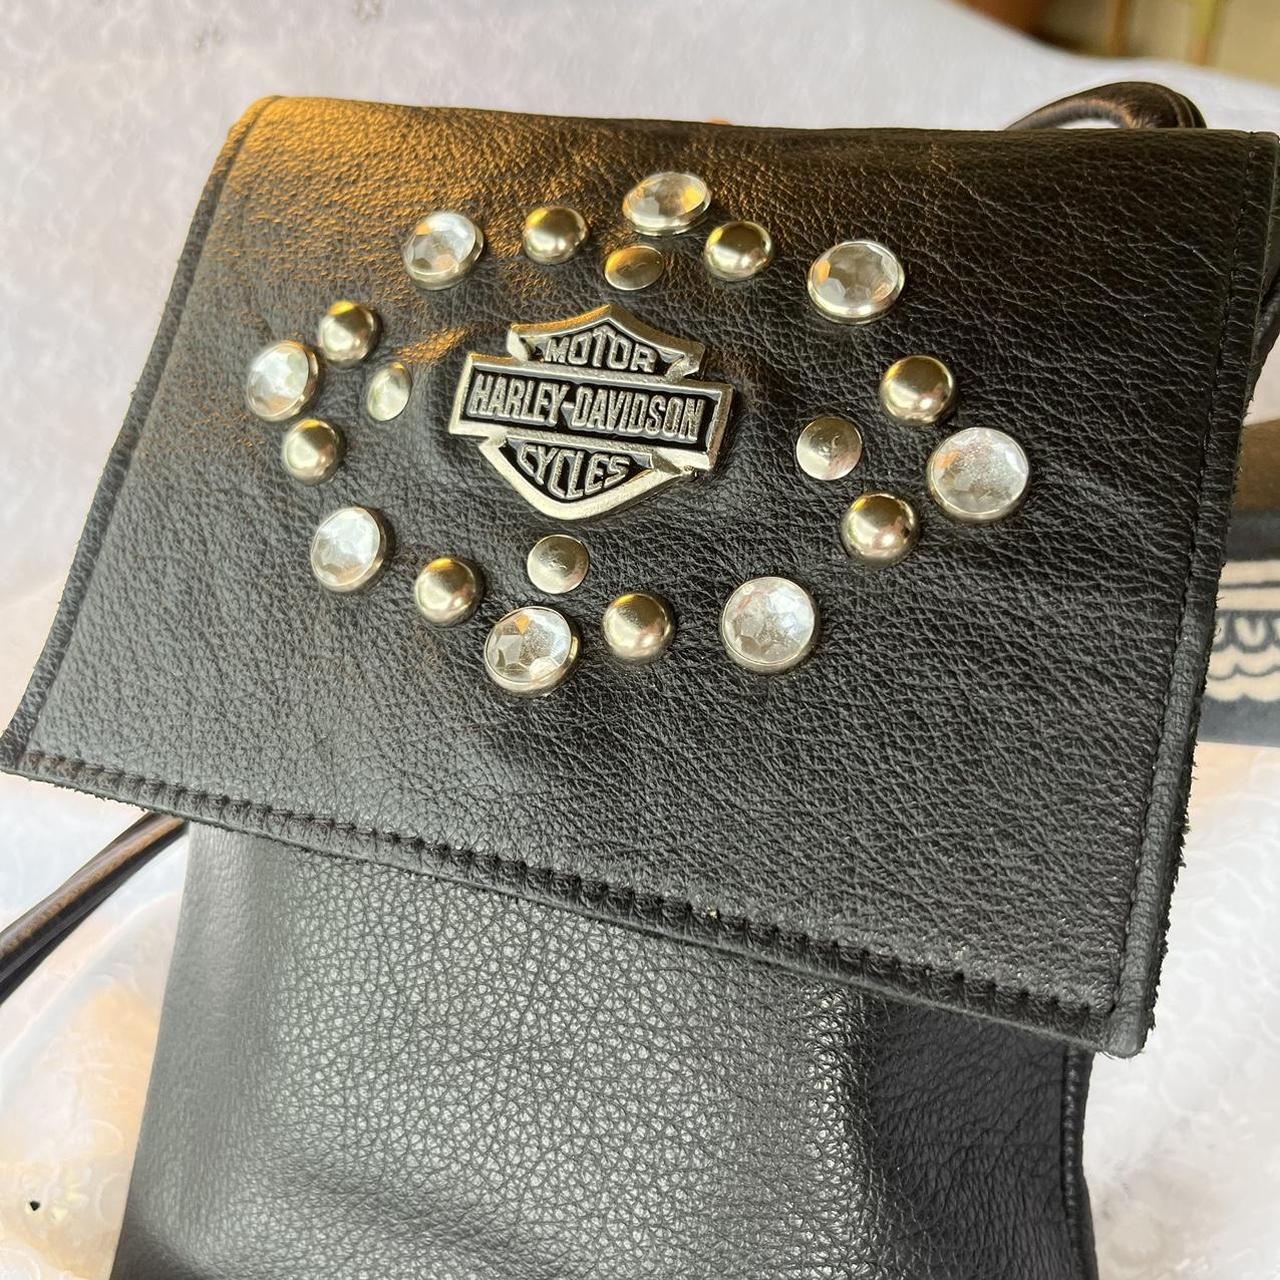 Harley Davidson purse - Gem